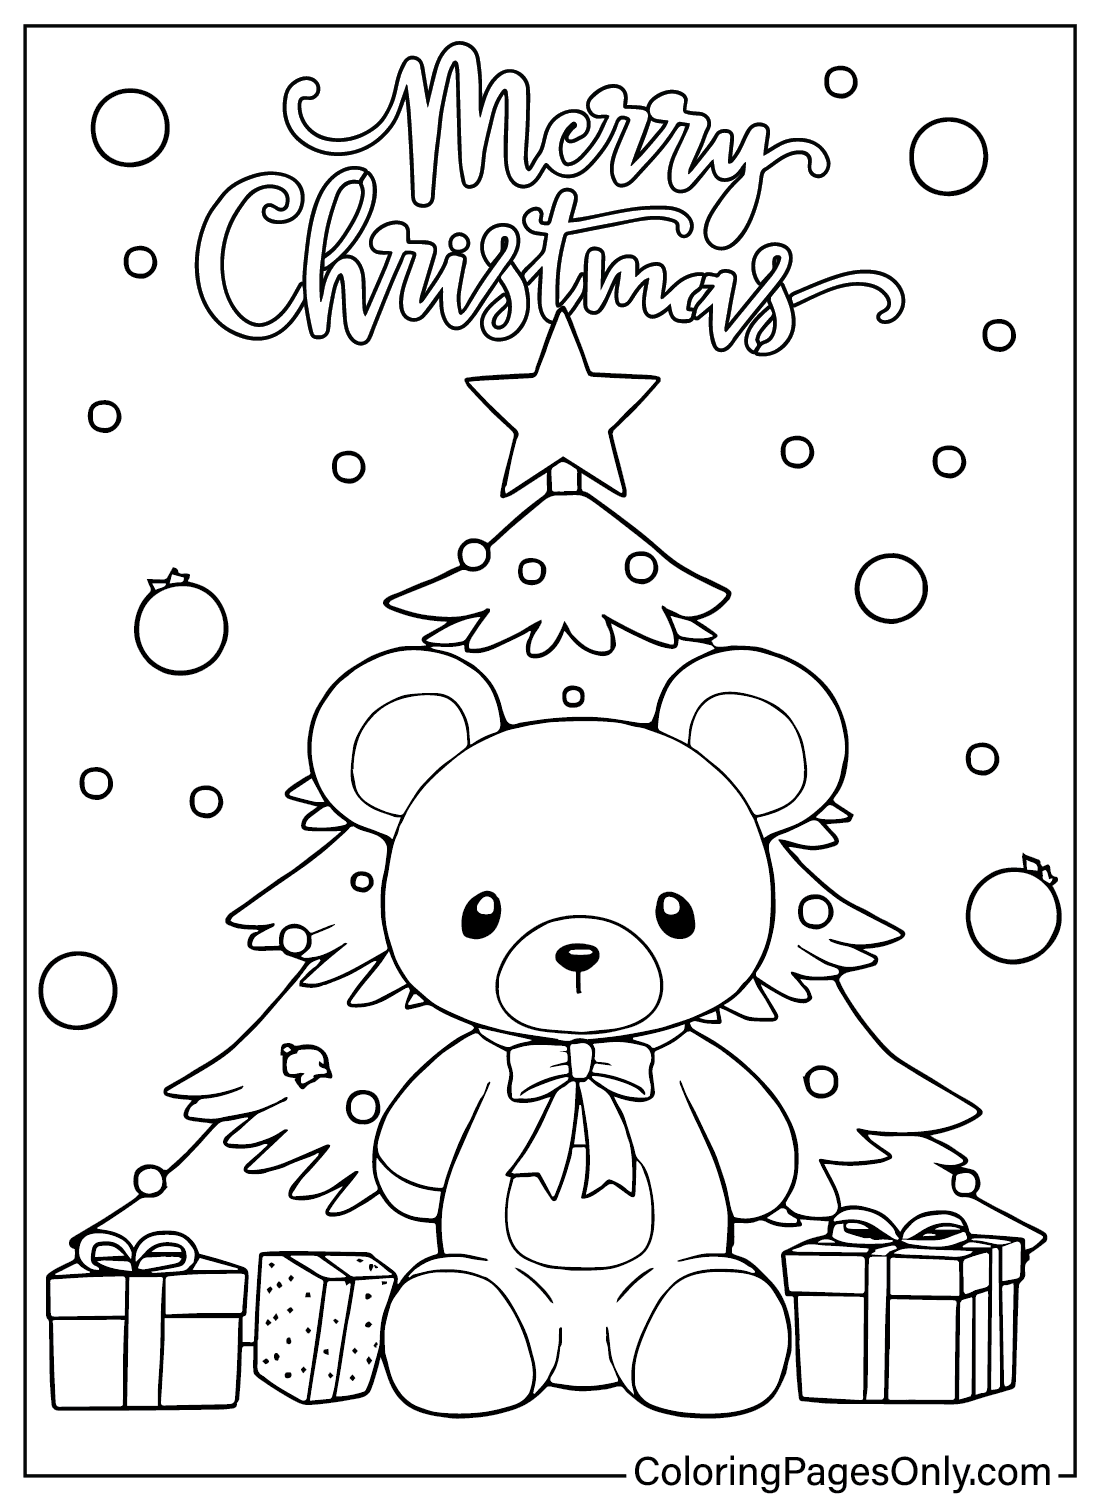 Página para colorear del árbol de Navidad del árbol de Navidad